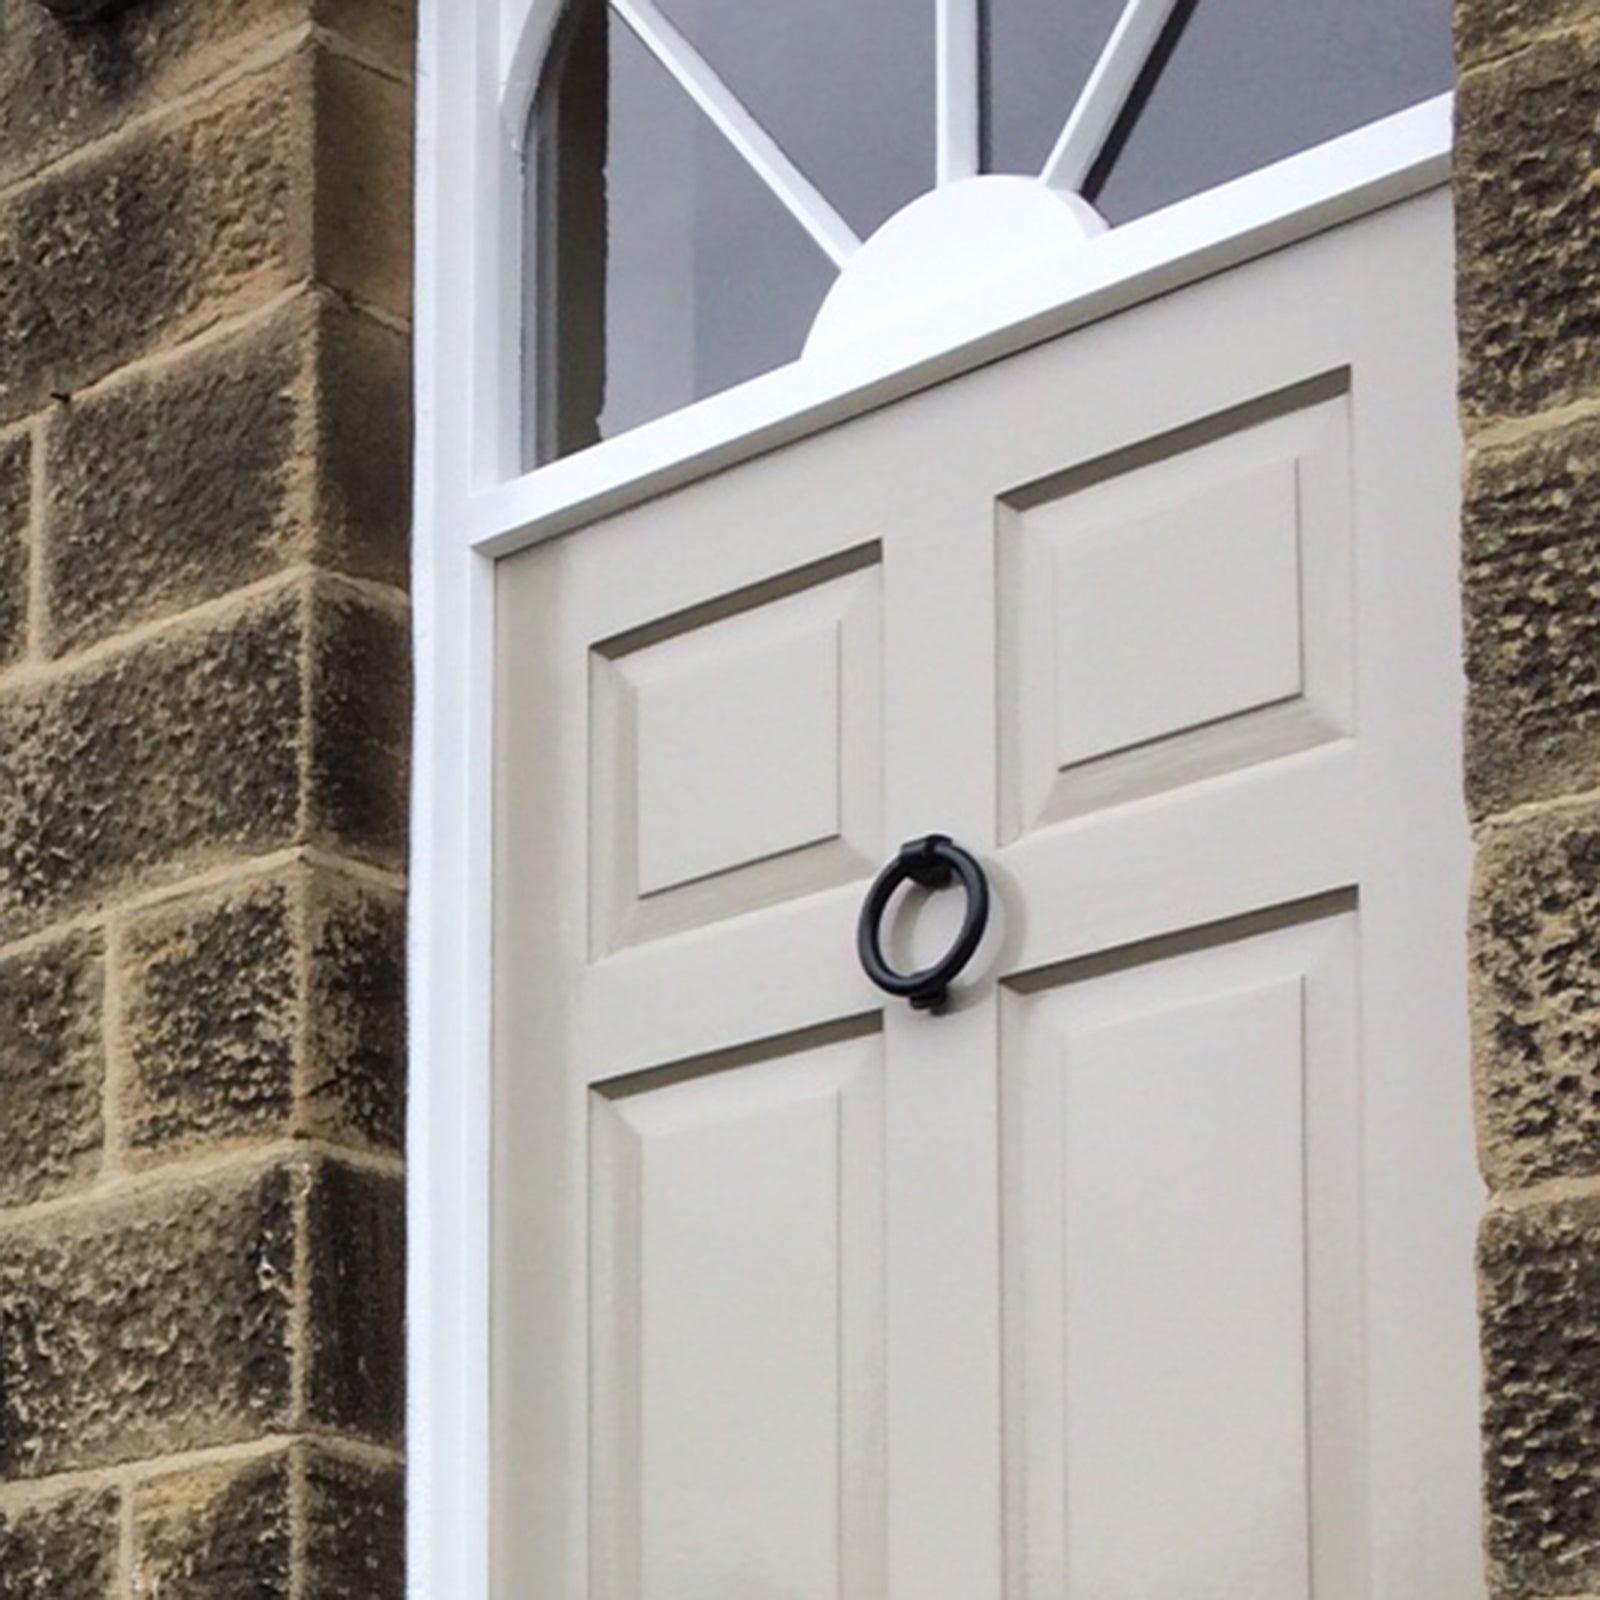 Door chain, SK78, Additional security for front doors